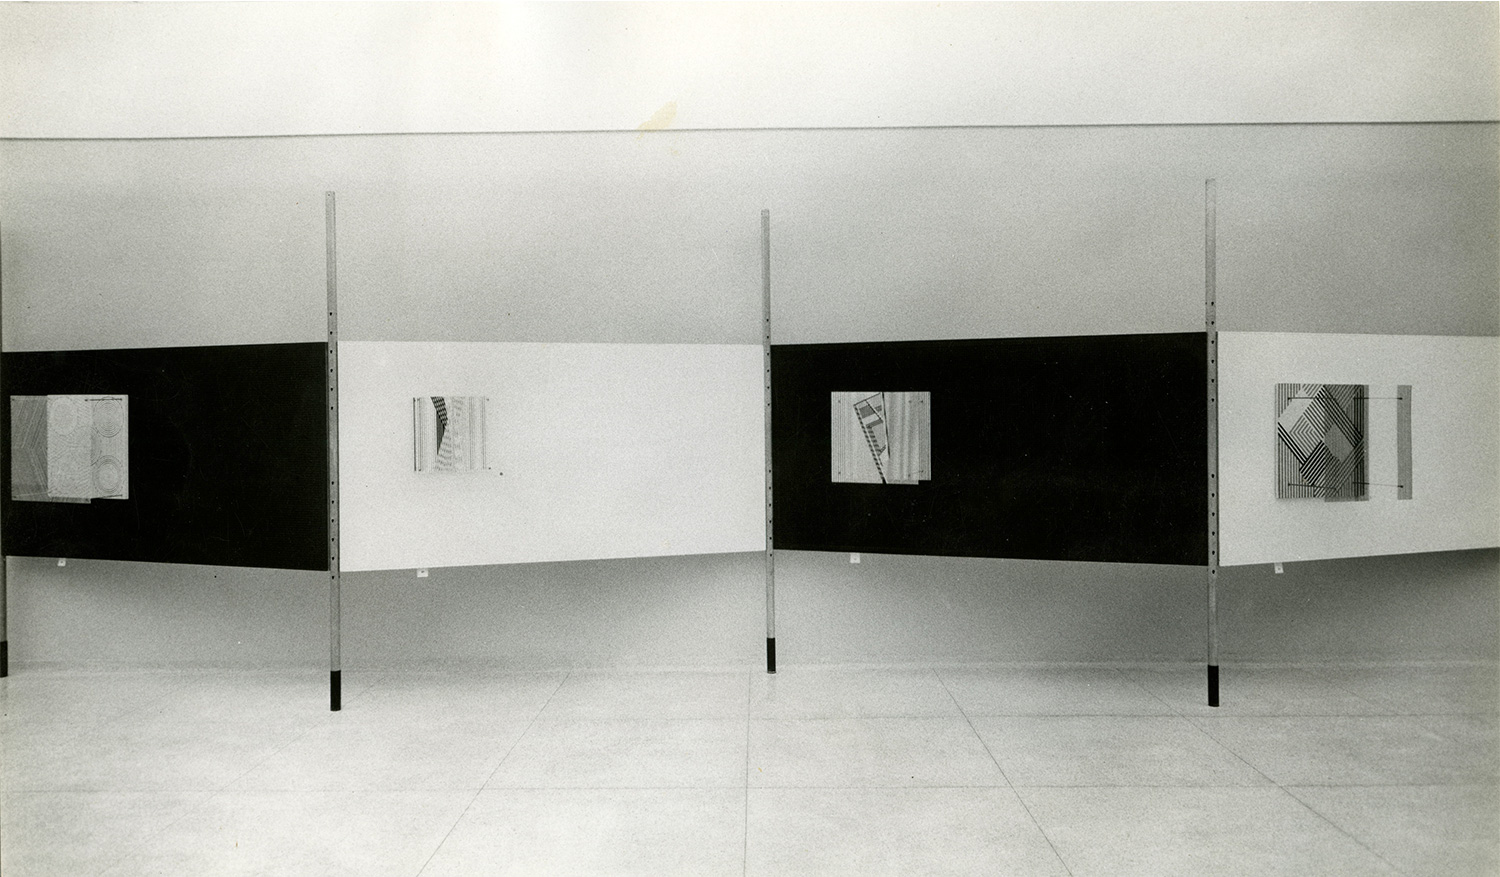 Soto estructuras cinéticas exhibition in Venezuela in 1957 at theMuseo de Bellas Artes in Caracas